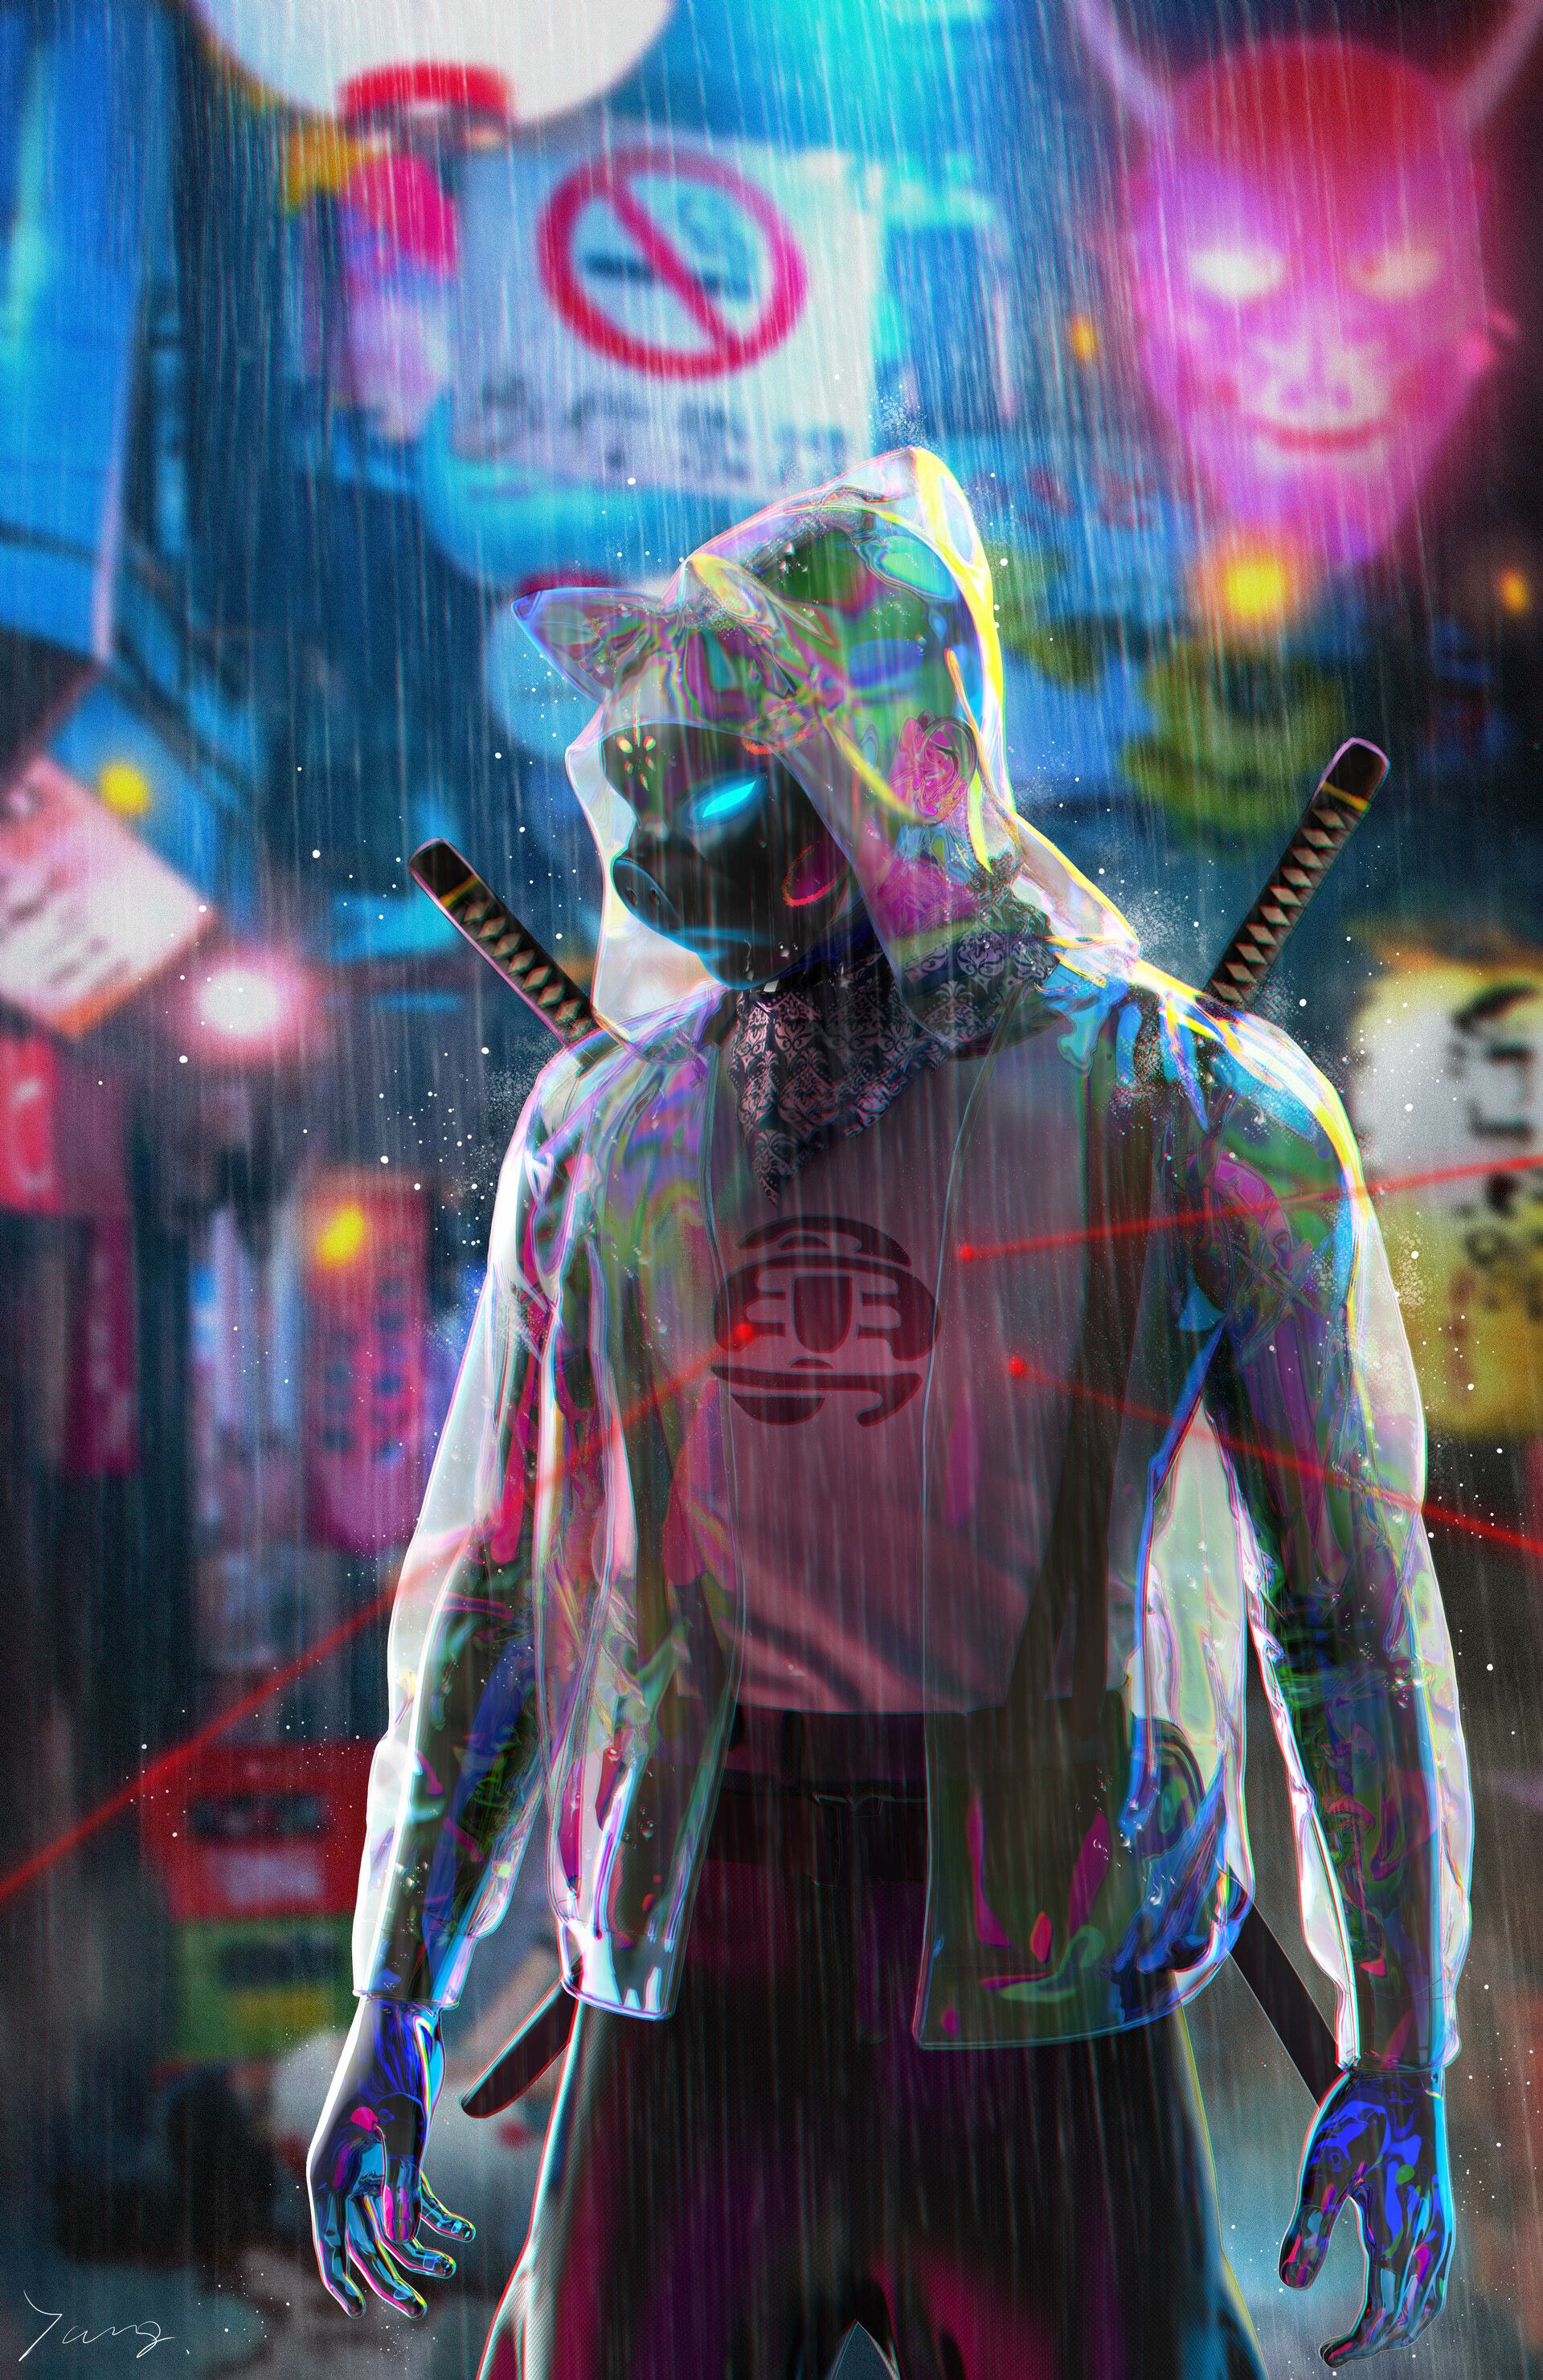 CyberPunk World (·̿Ĺ̯·̿ ̿). Cyberpunk art